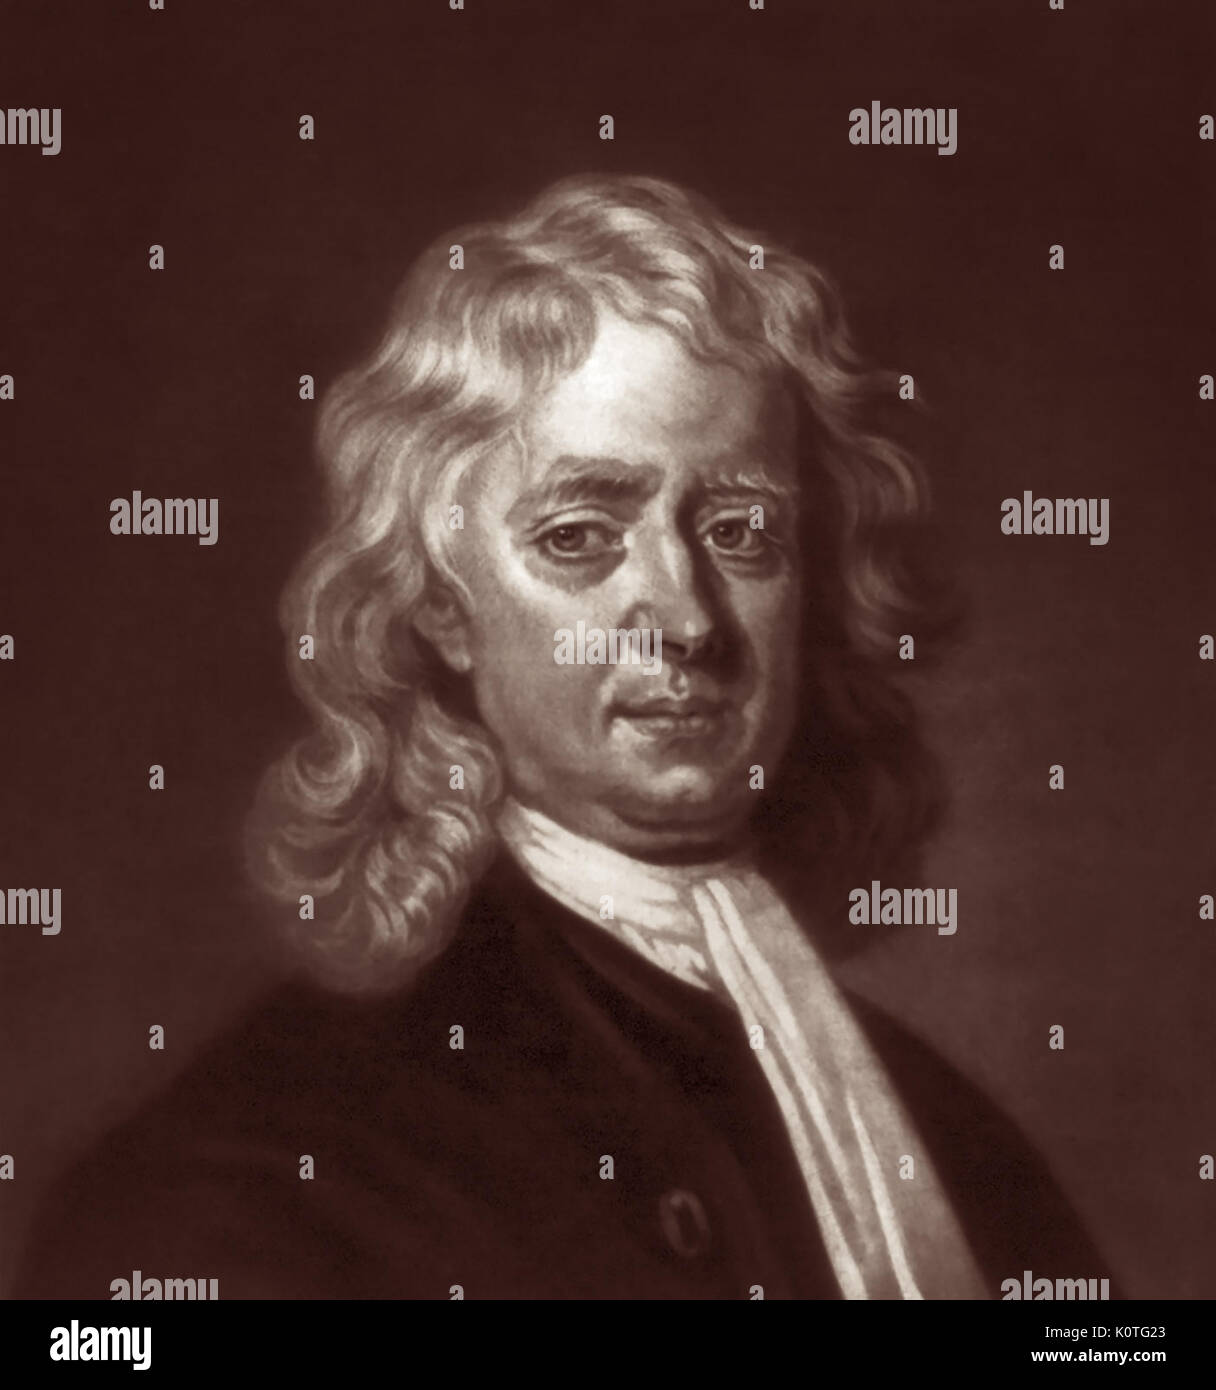 Sir Isaac Newton PRS (1643-1727) era un matematico inglese, astronomo e fisico che ha inventato il tartaro e ha scoperto le leggi della gravità e del movimento. Newton fu una figura chiave nella rivoluzione scientifica ed è ampiamente riconosciuto come uno dei più influenti scienziati di tutti i tempi. Foto Stock